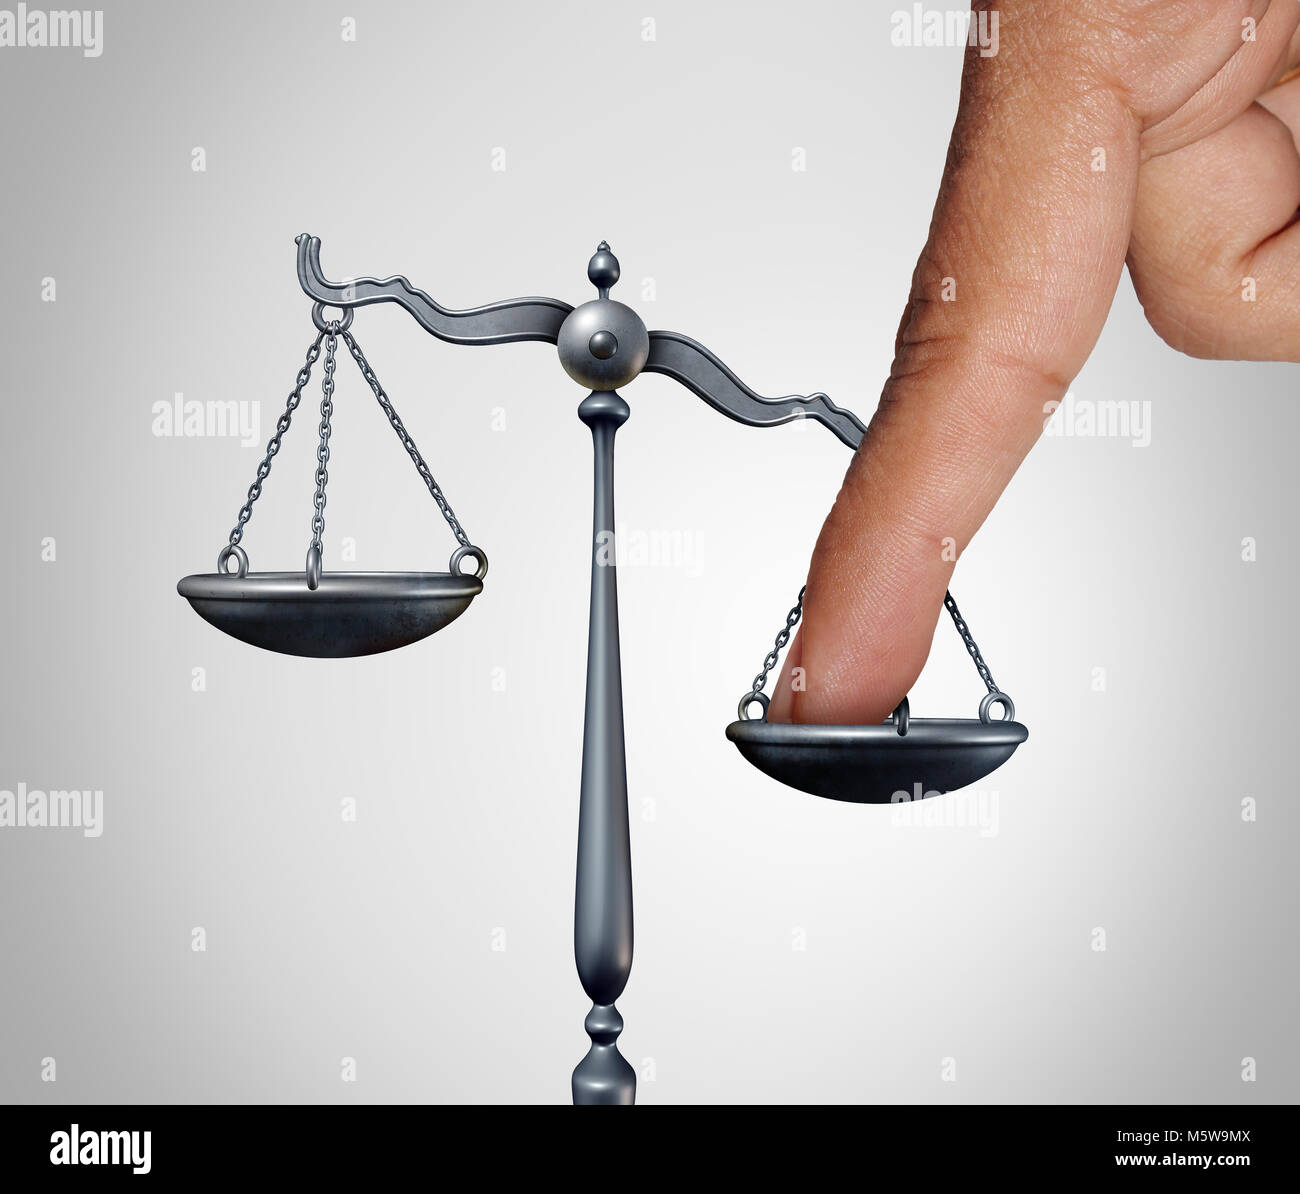 La balance de la justice concept comme le doigt d'une personne d'influencer illégalement le système juridique pour un avantage indu. Banque D'Images